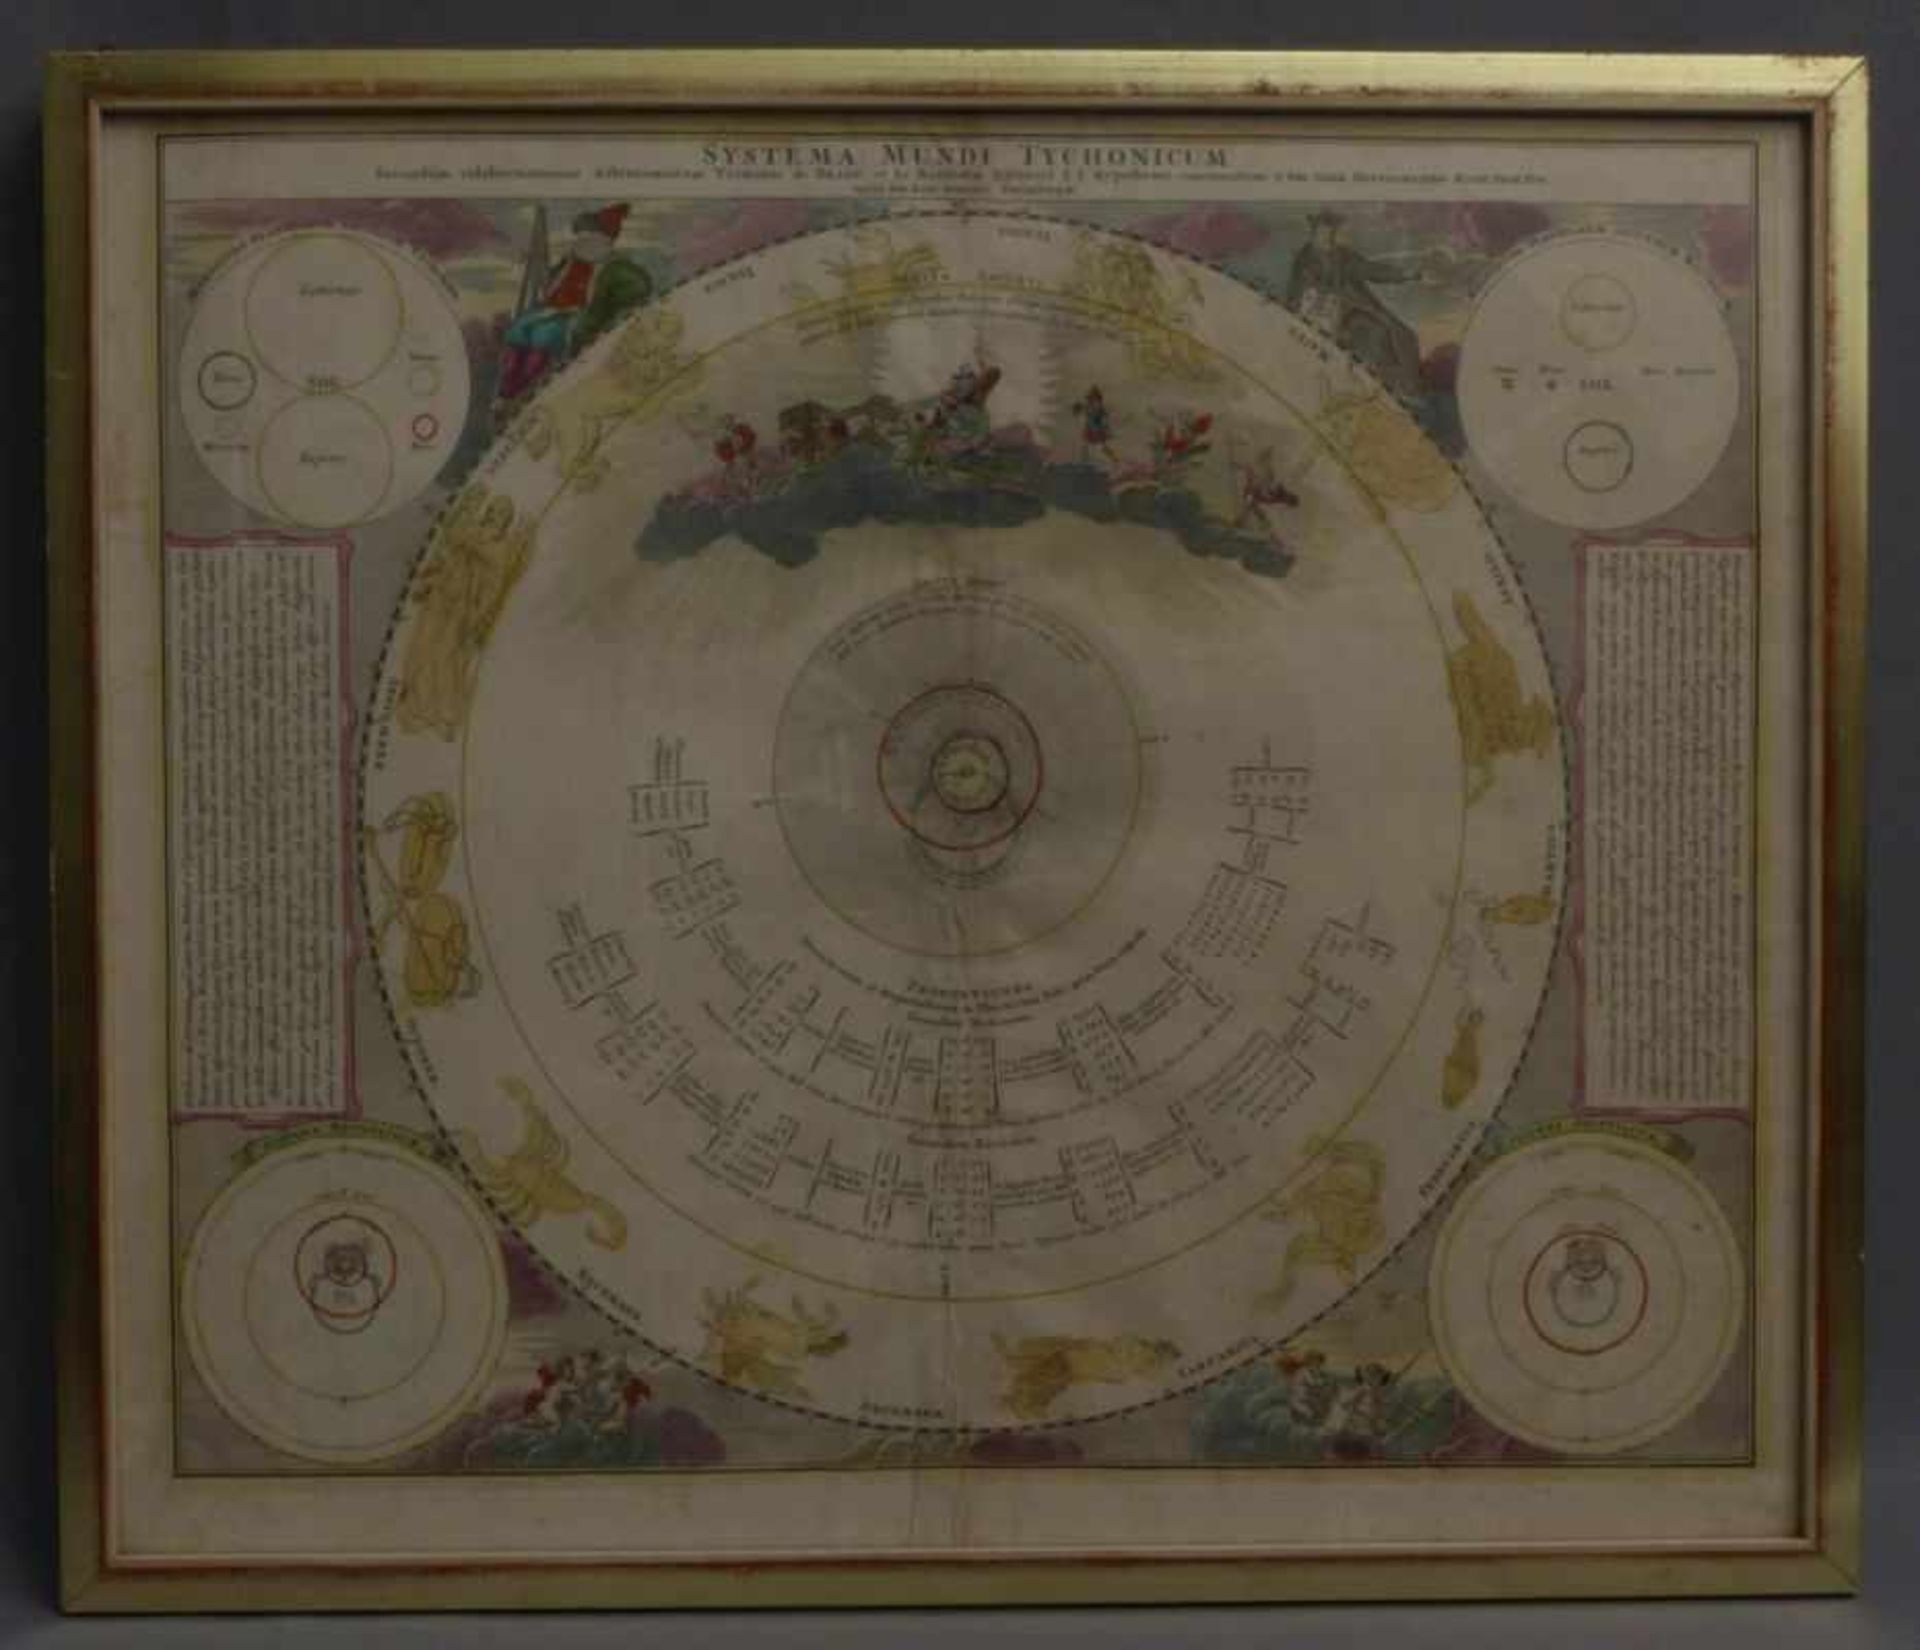 Homann, Johann Baptist "Systema Solare et Planetarium" & "Systema Mundi Tychonicum" (Kammlach 1664- - Bild 3 aus 4